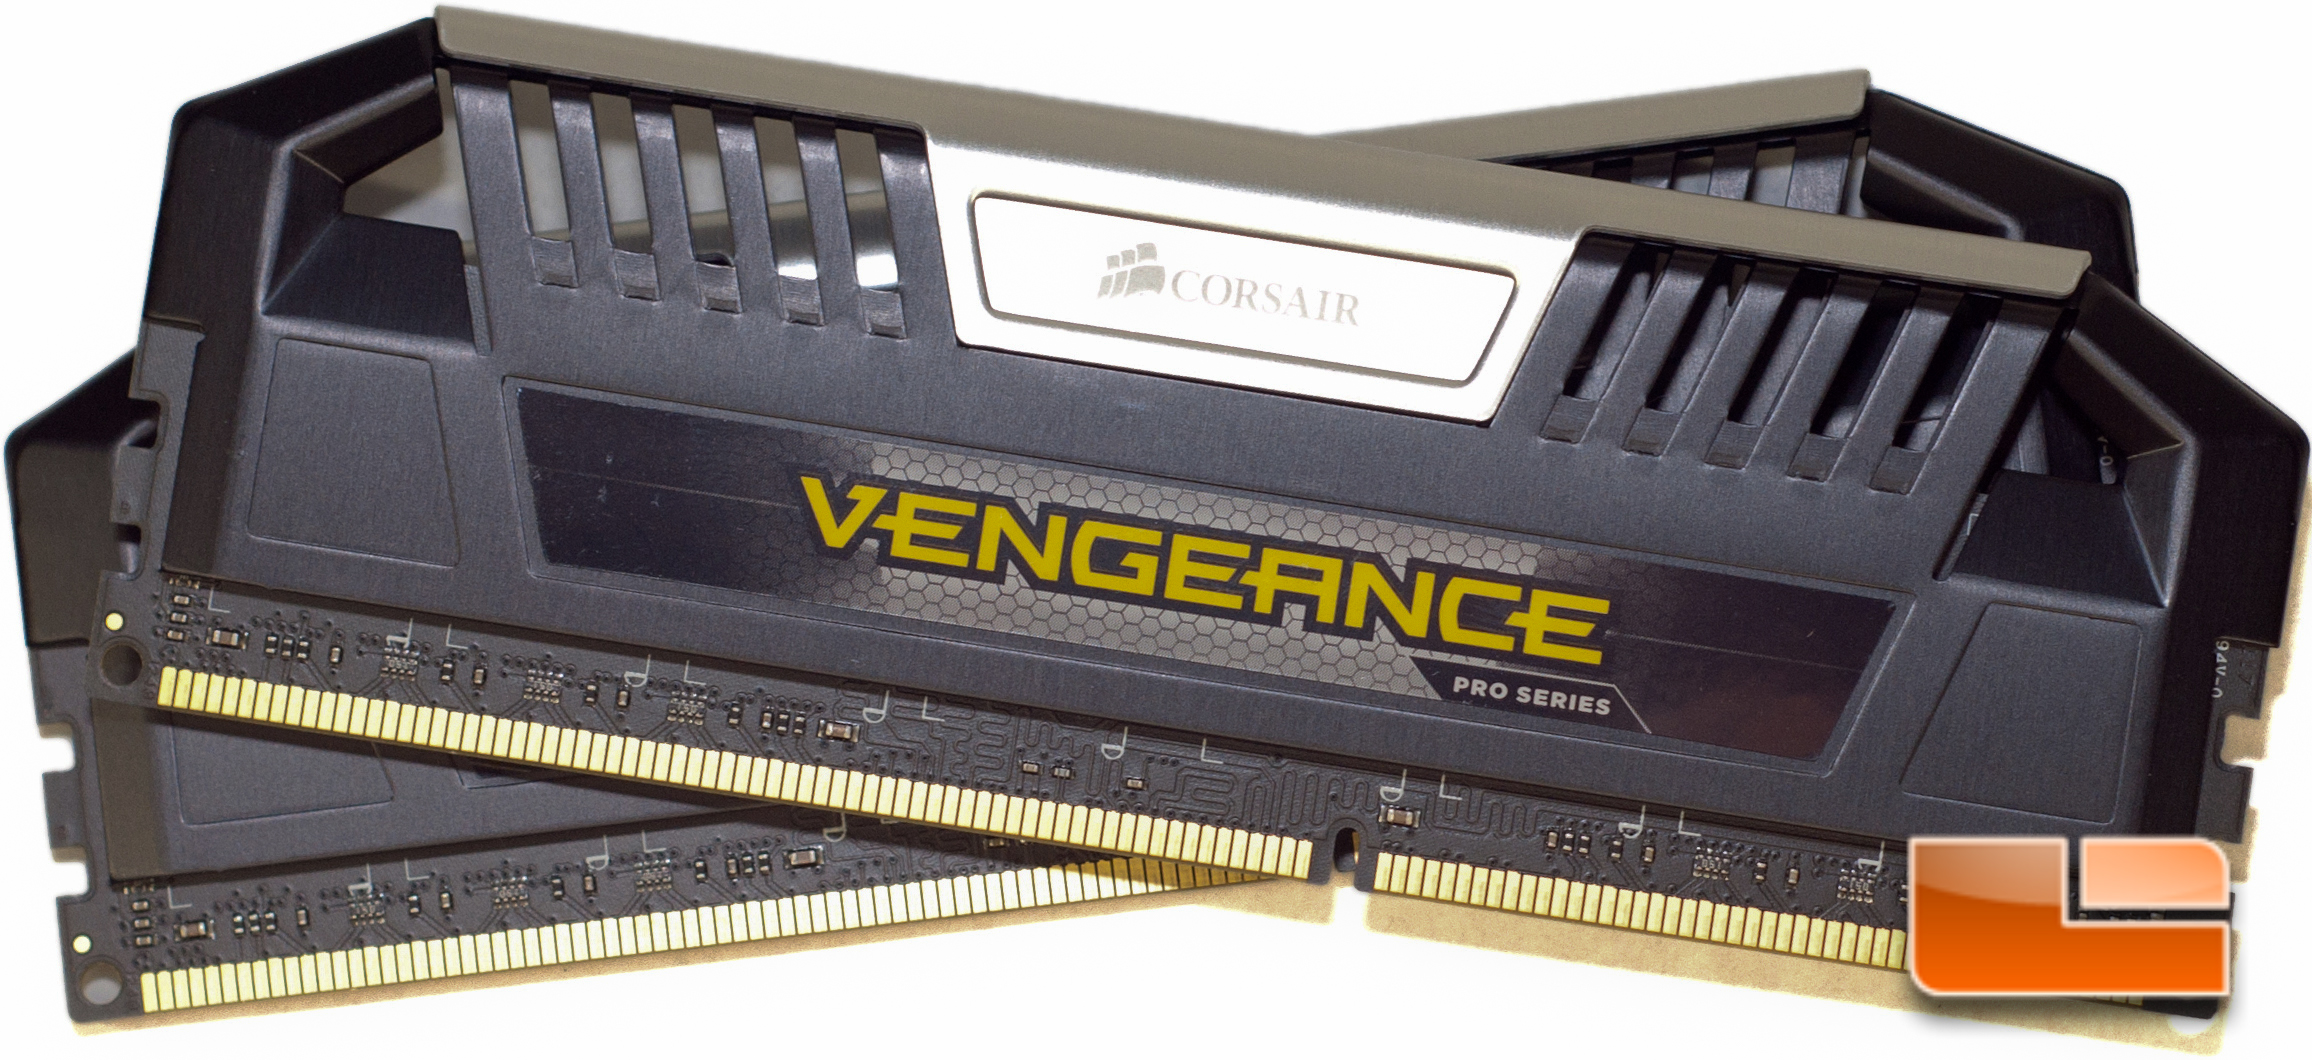 maternal har en finger i kagen landing Corsair Vengeance Pro Series 16GB DDR3 1866MHz Memory Kit Review - Legit  Reviews